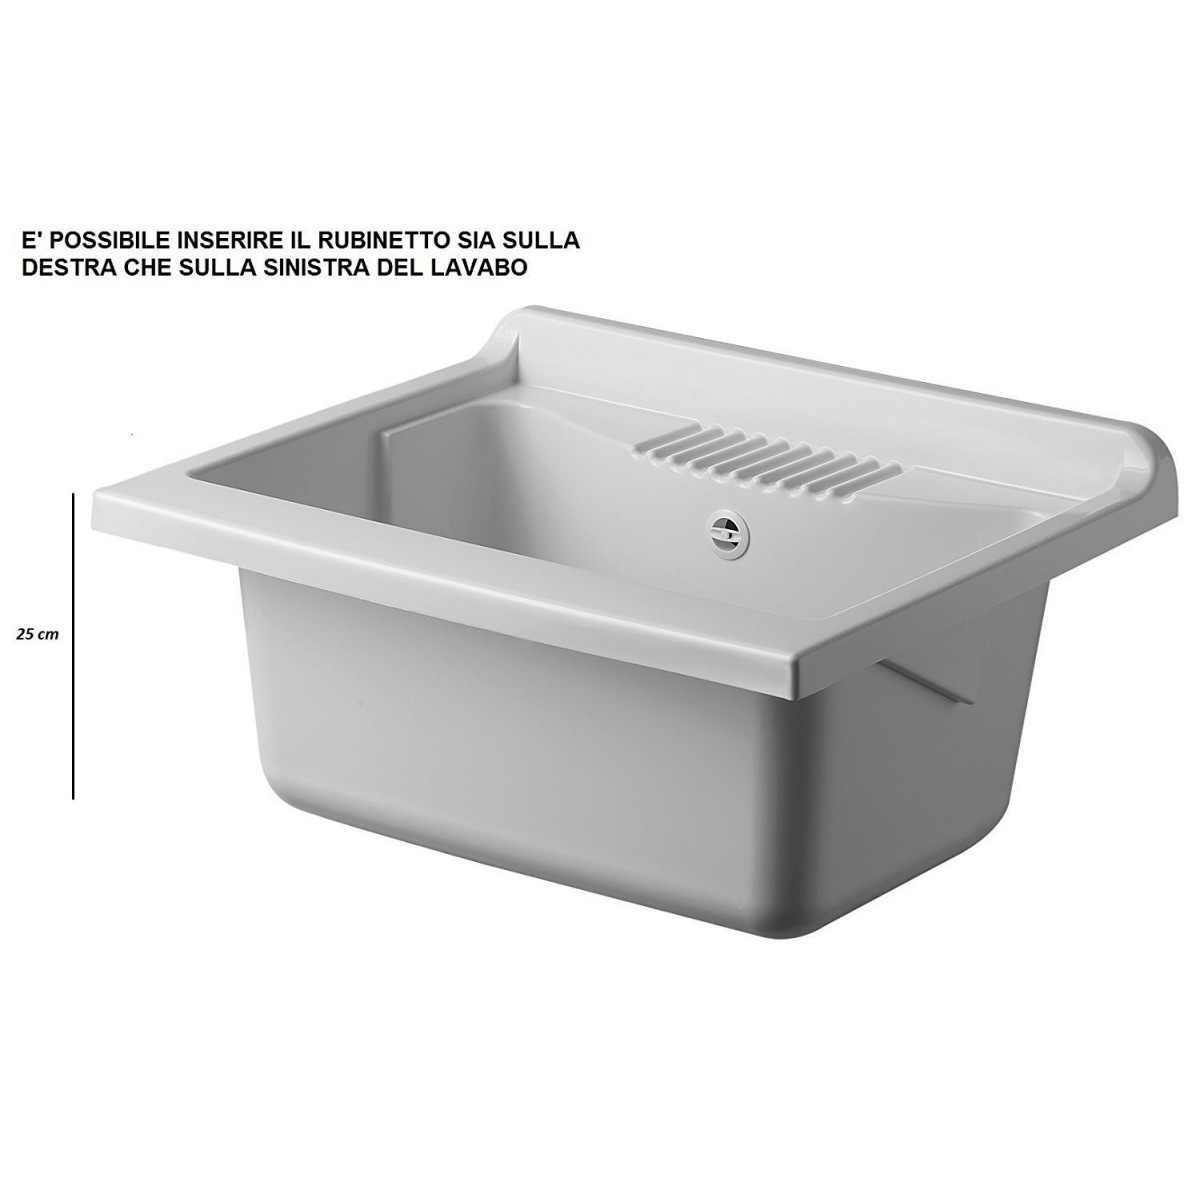 https://www.bricoshop24.it/28104-thickbox_default/pilozzo-in-resina-da-esterno-terrazzo-vasca-45x50-lavanderia-mobile-lavatoio.jpg